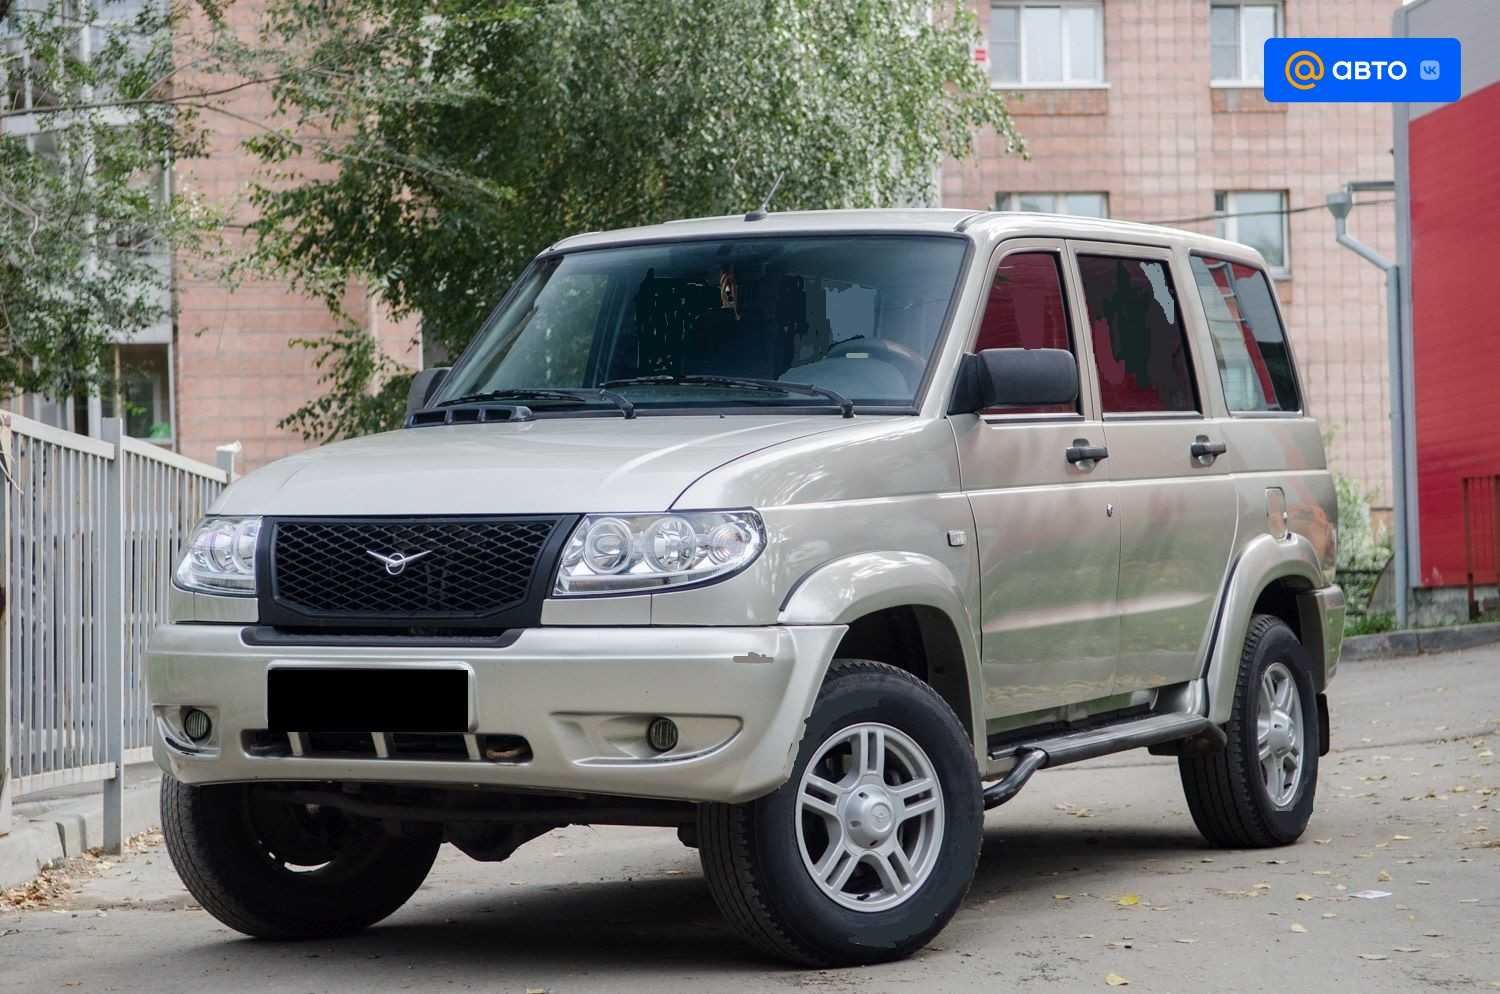 Отзывы реальных владельцев УАЗ Pickup, описание достоинств и недостатков